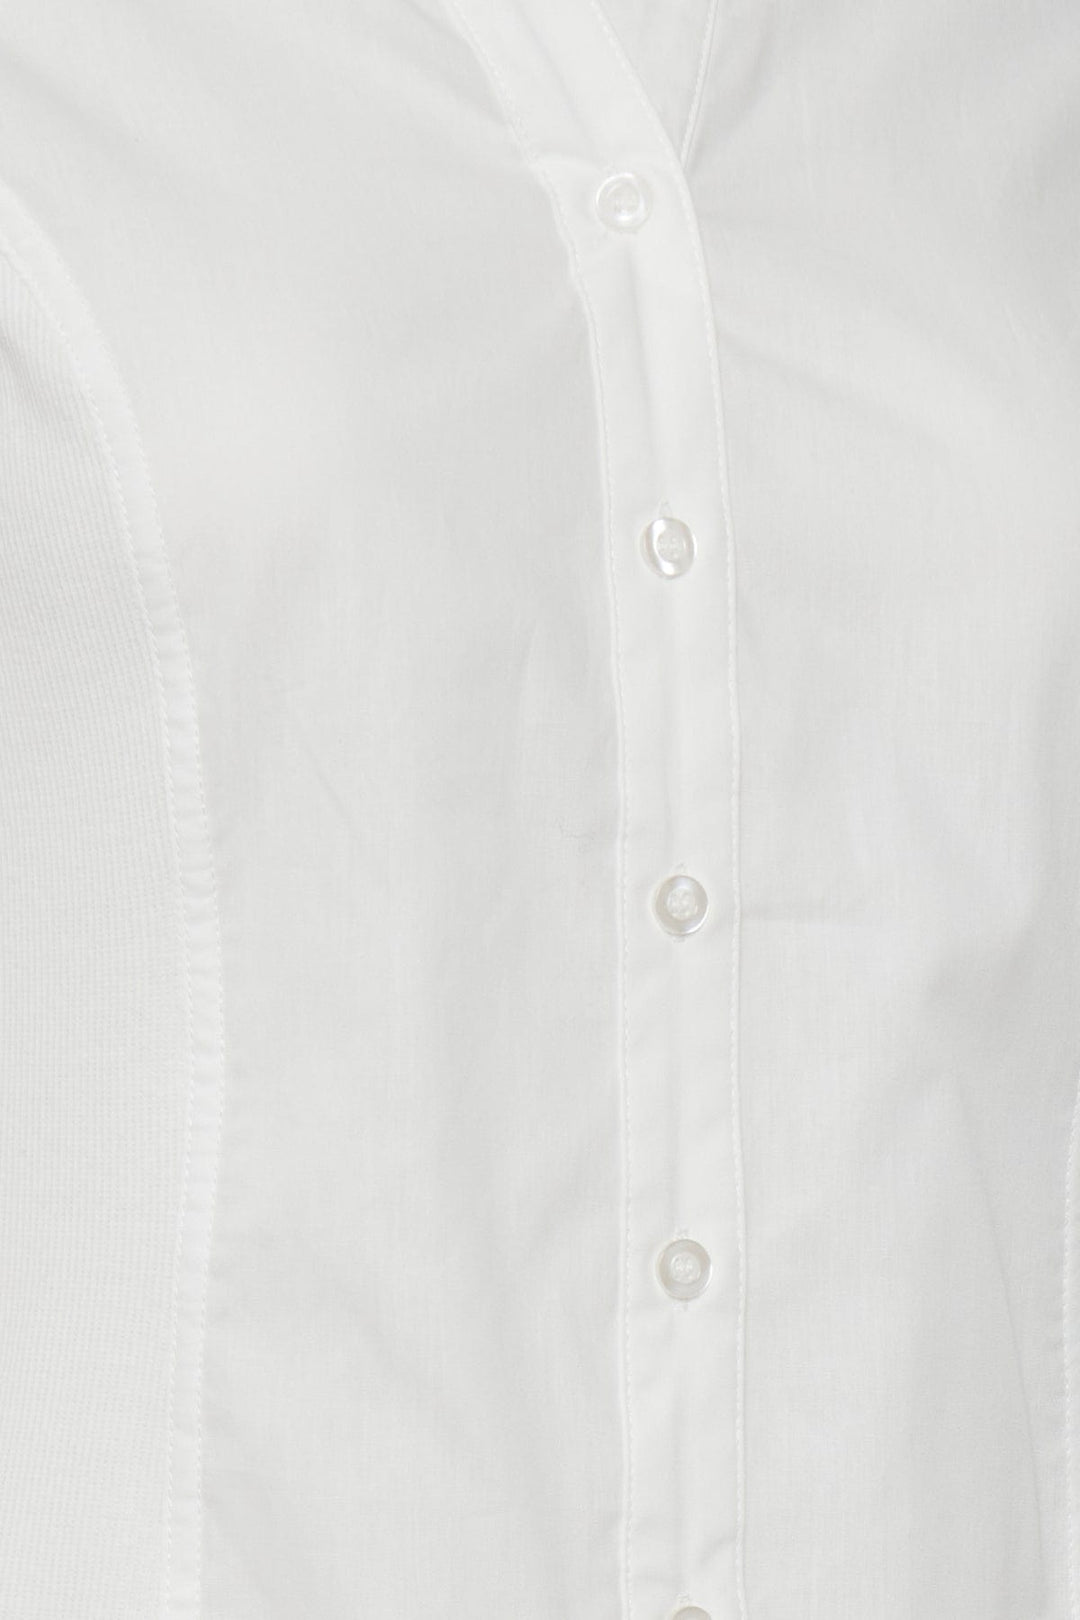 Frpastin 1 Shirt | Skjorter og bluser | Smuk - Dameklær på nett